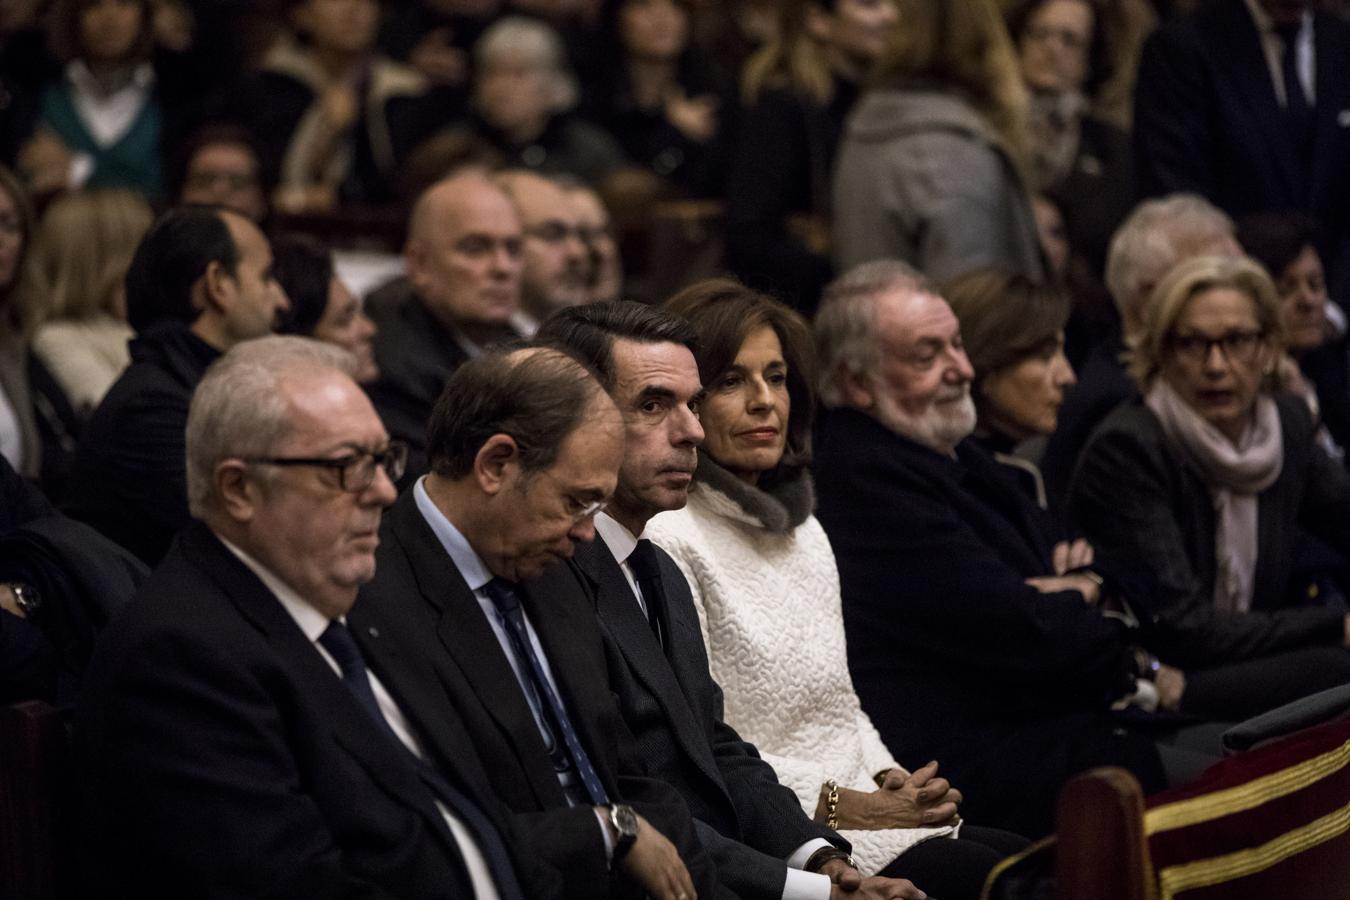 Misa en recuerdo de Rita Barberá en la catedral de Valencia